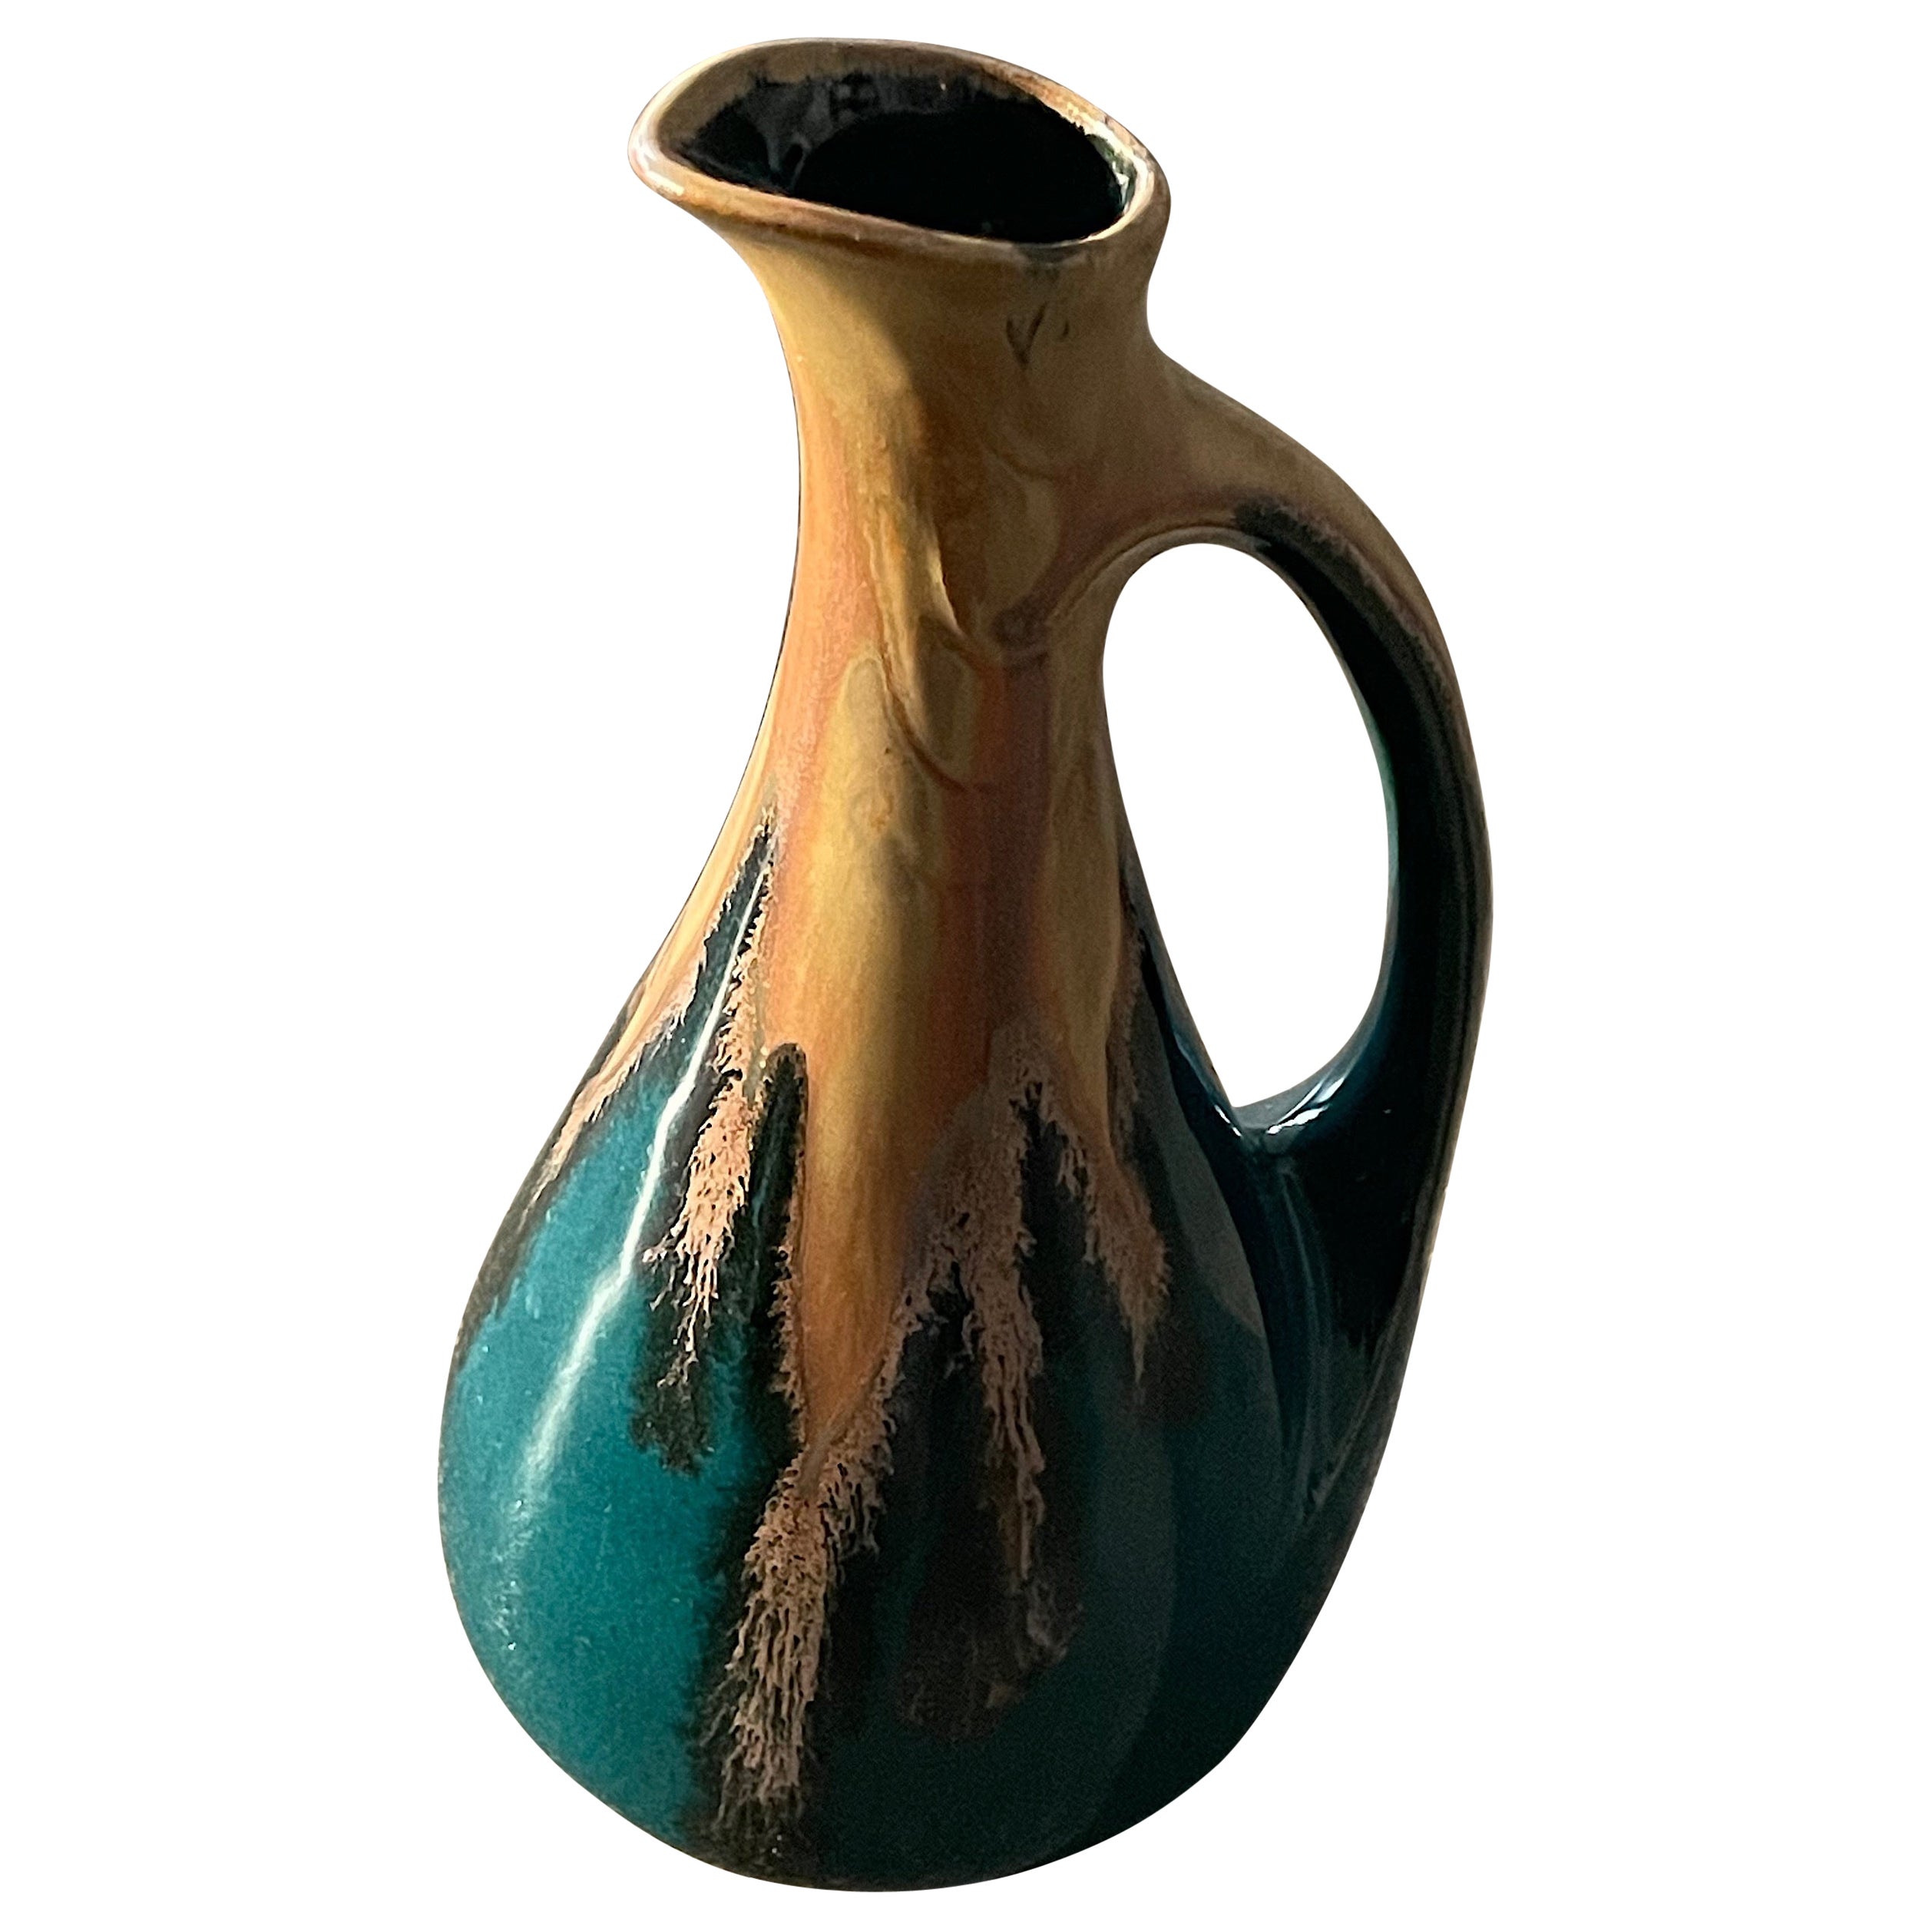 1960's French Ceramic Vase by Denbac for Girardot Chissay